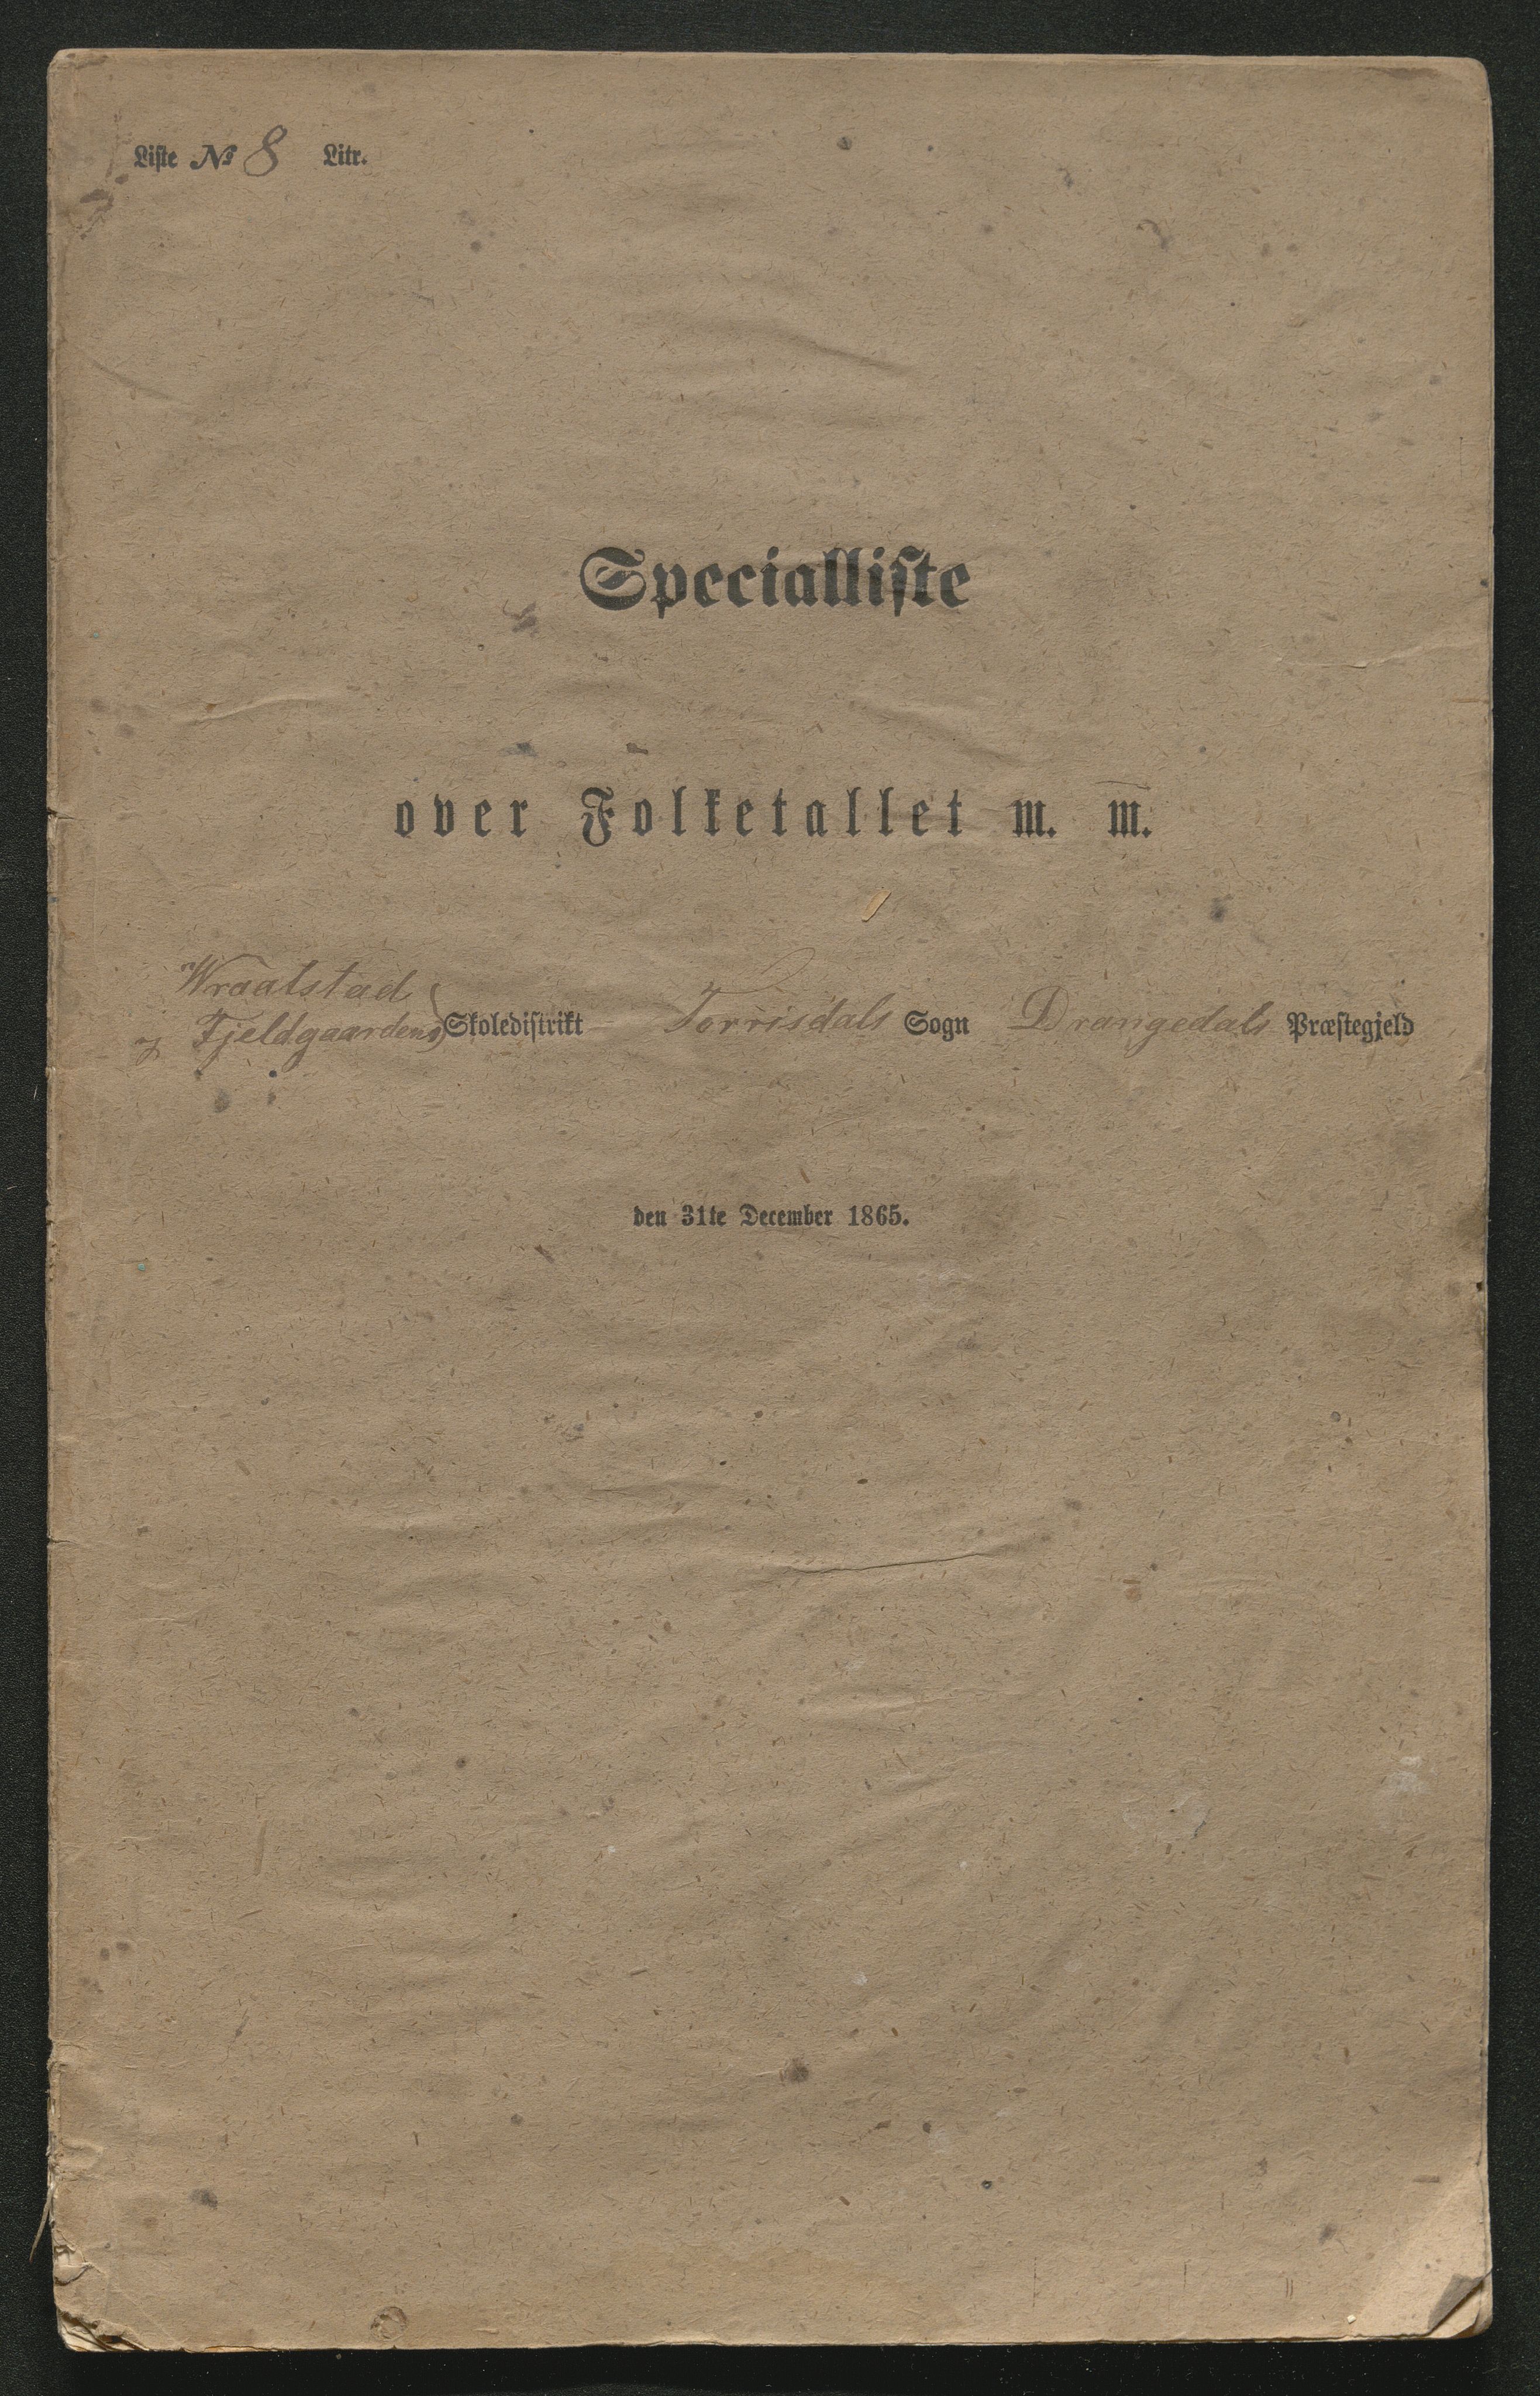 SAKO, Fantetellingen i Drangedal 1865, 1865, s. 121